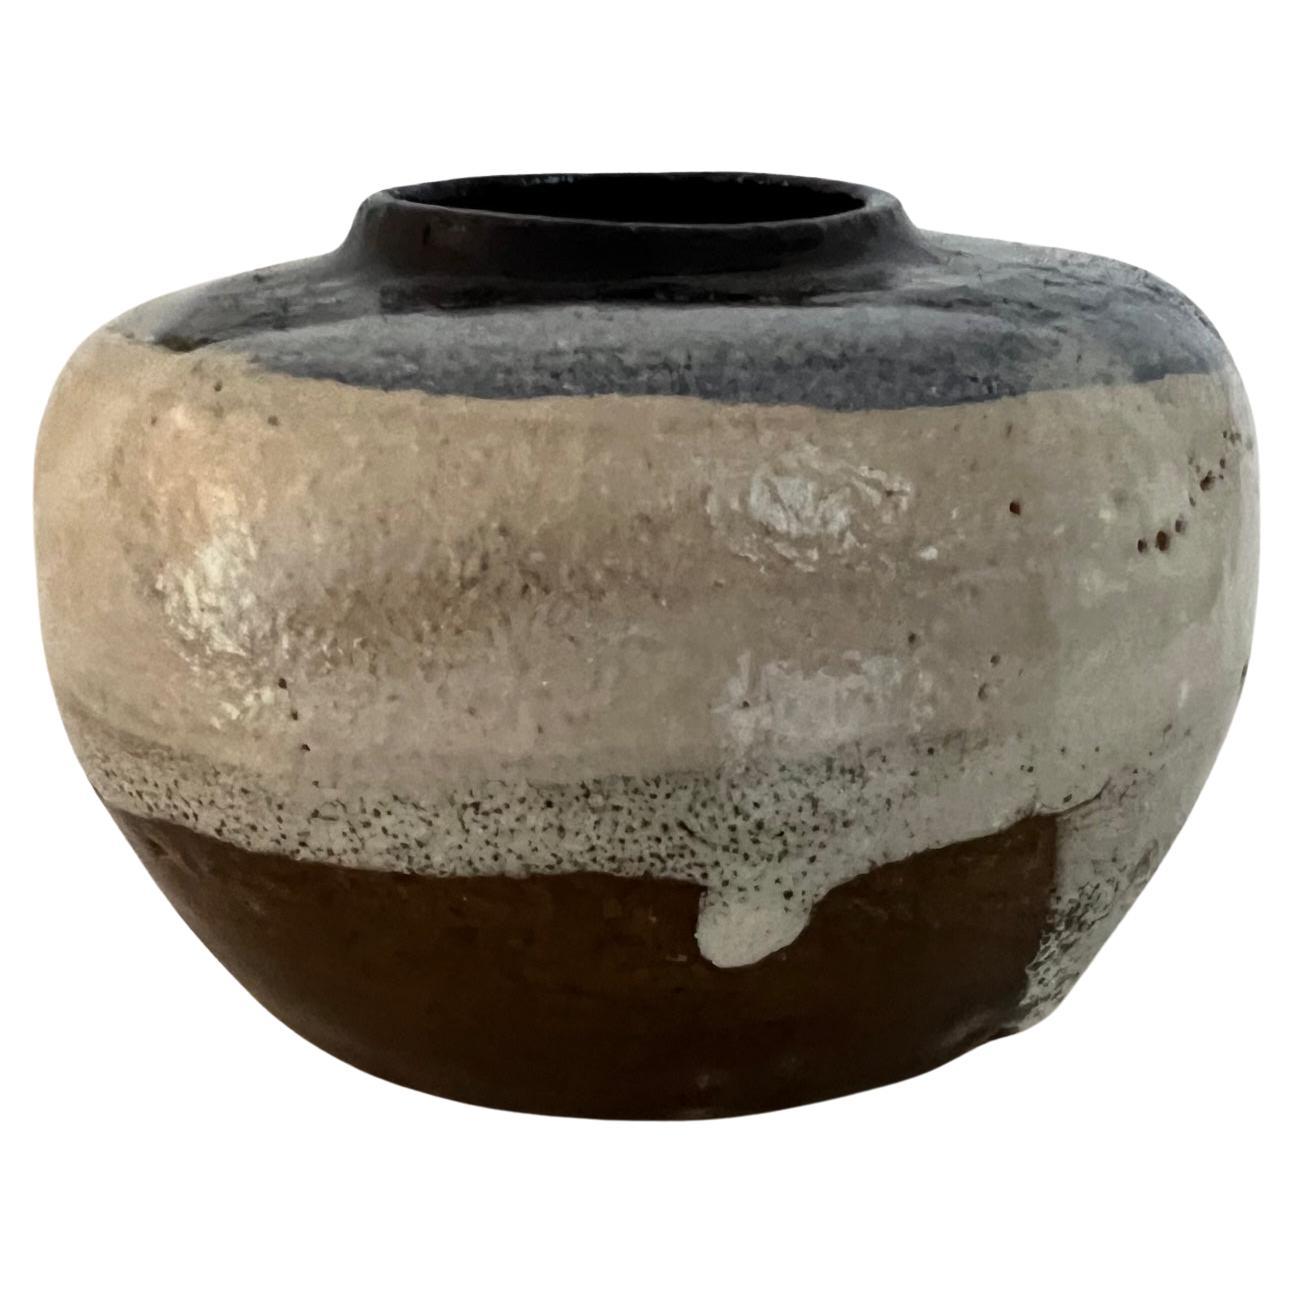 Petit vase en céramique fait à la main, signé par le potier.  Peint en glaçure goutte à goutte avec des formes géométriques de couleur crème et des tons de bleu.